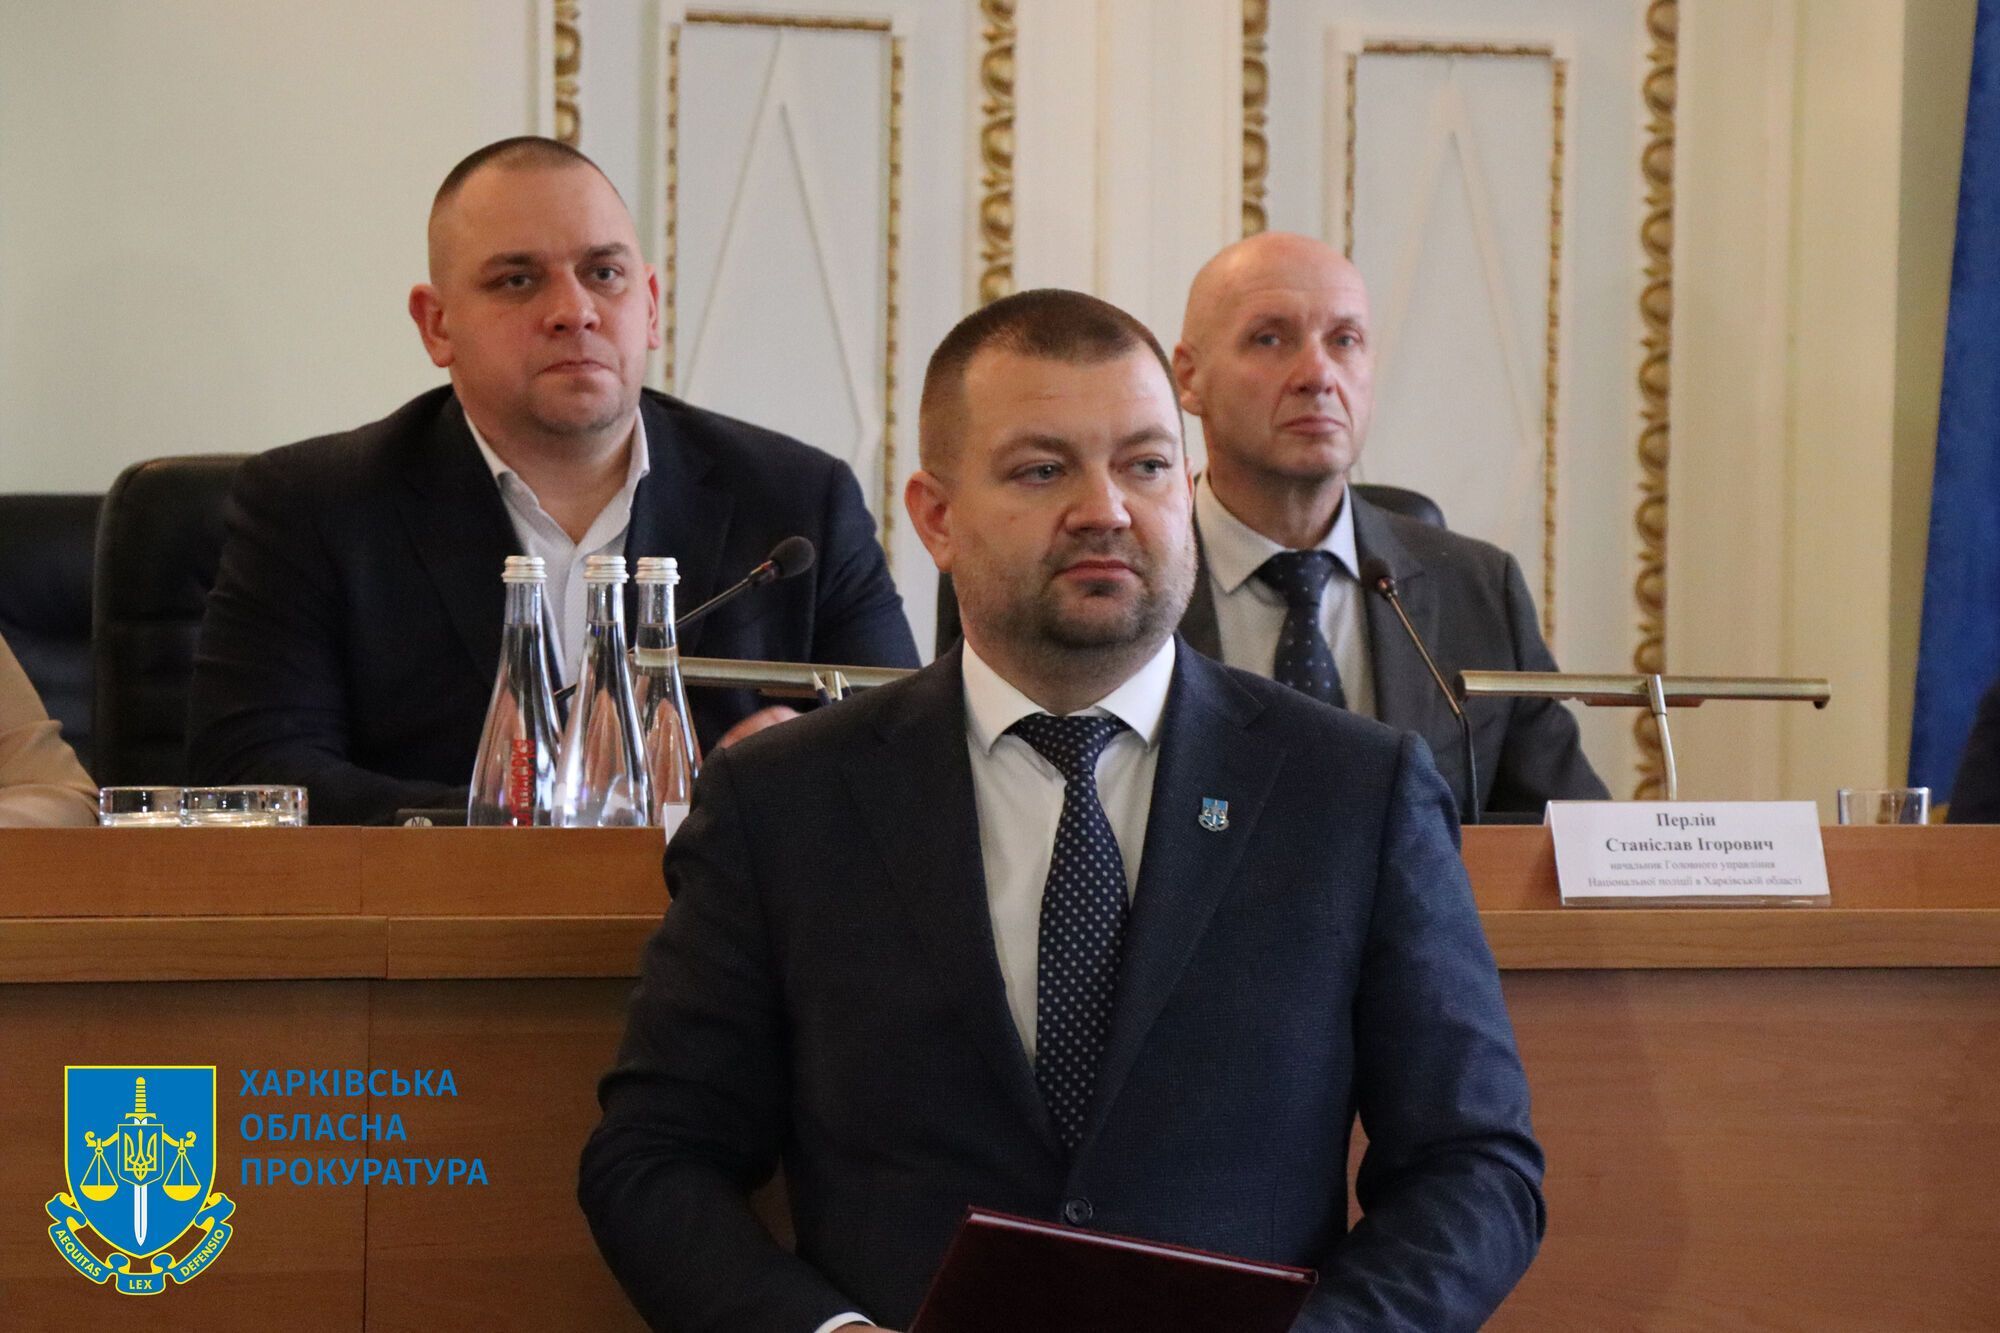 У Харківській обласній прокуратурі відбулися урочистості з нагоди Дня працівників прокуратури України (ФОТО)